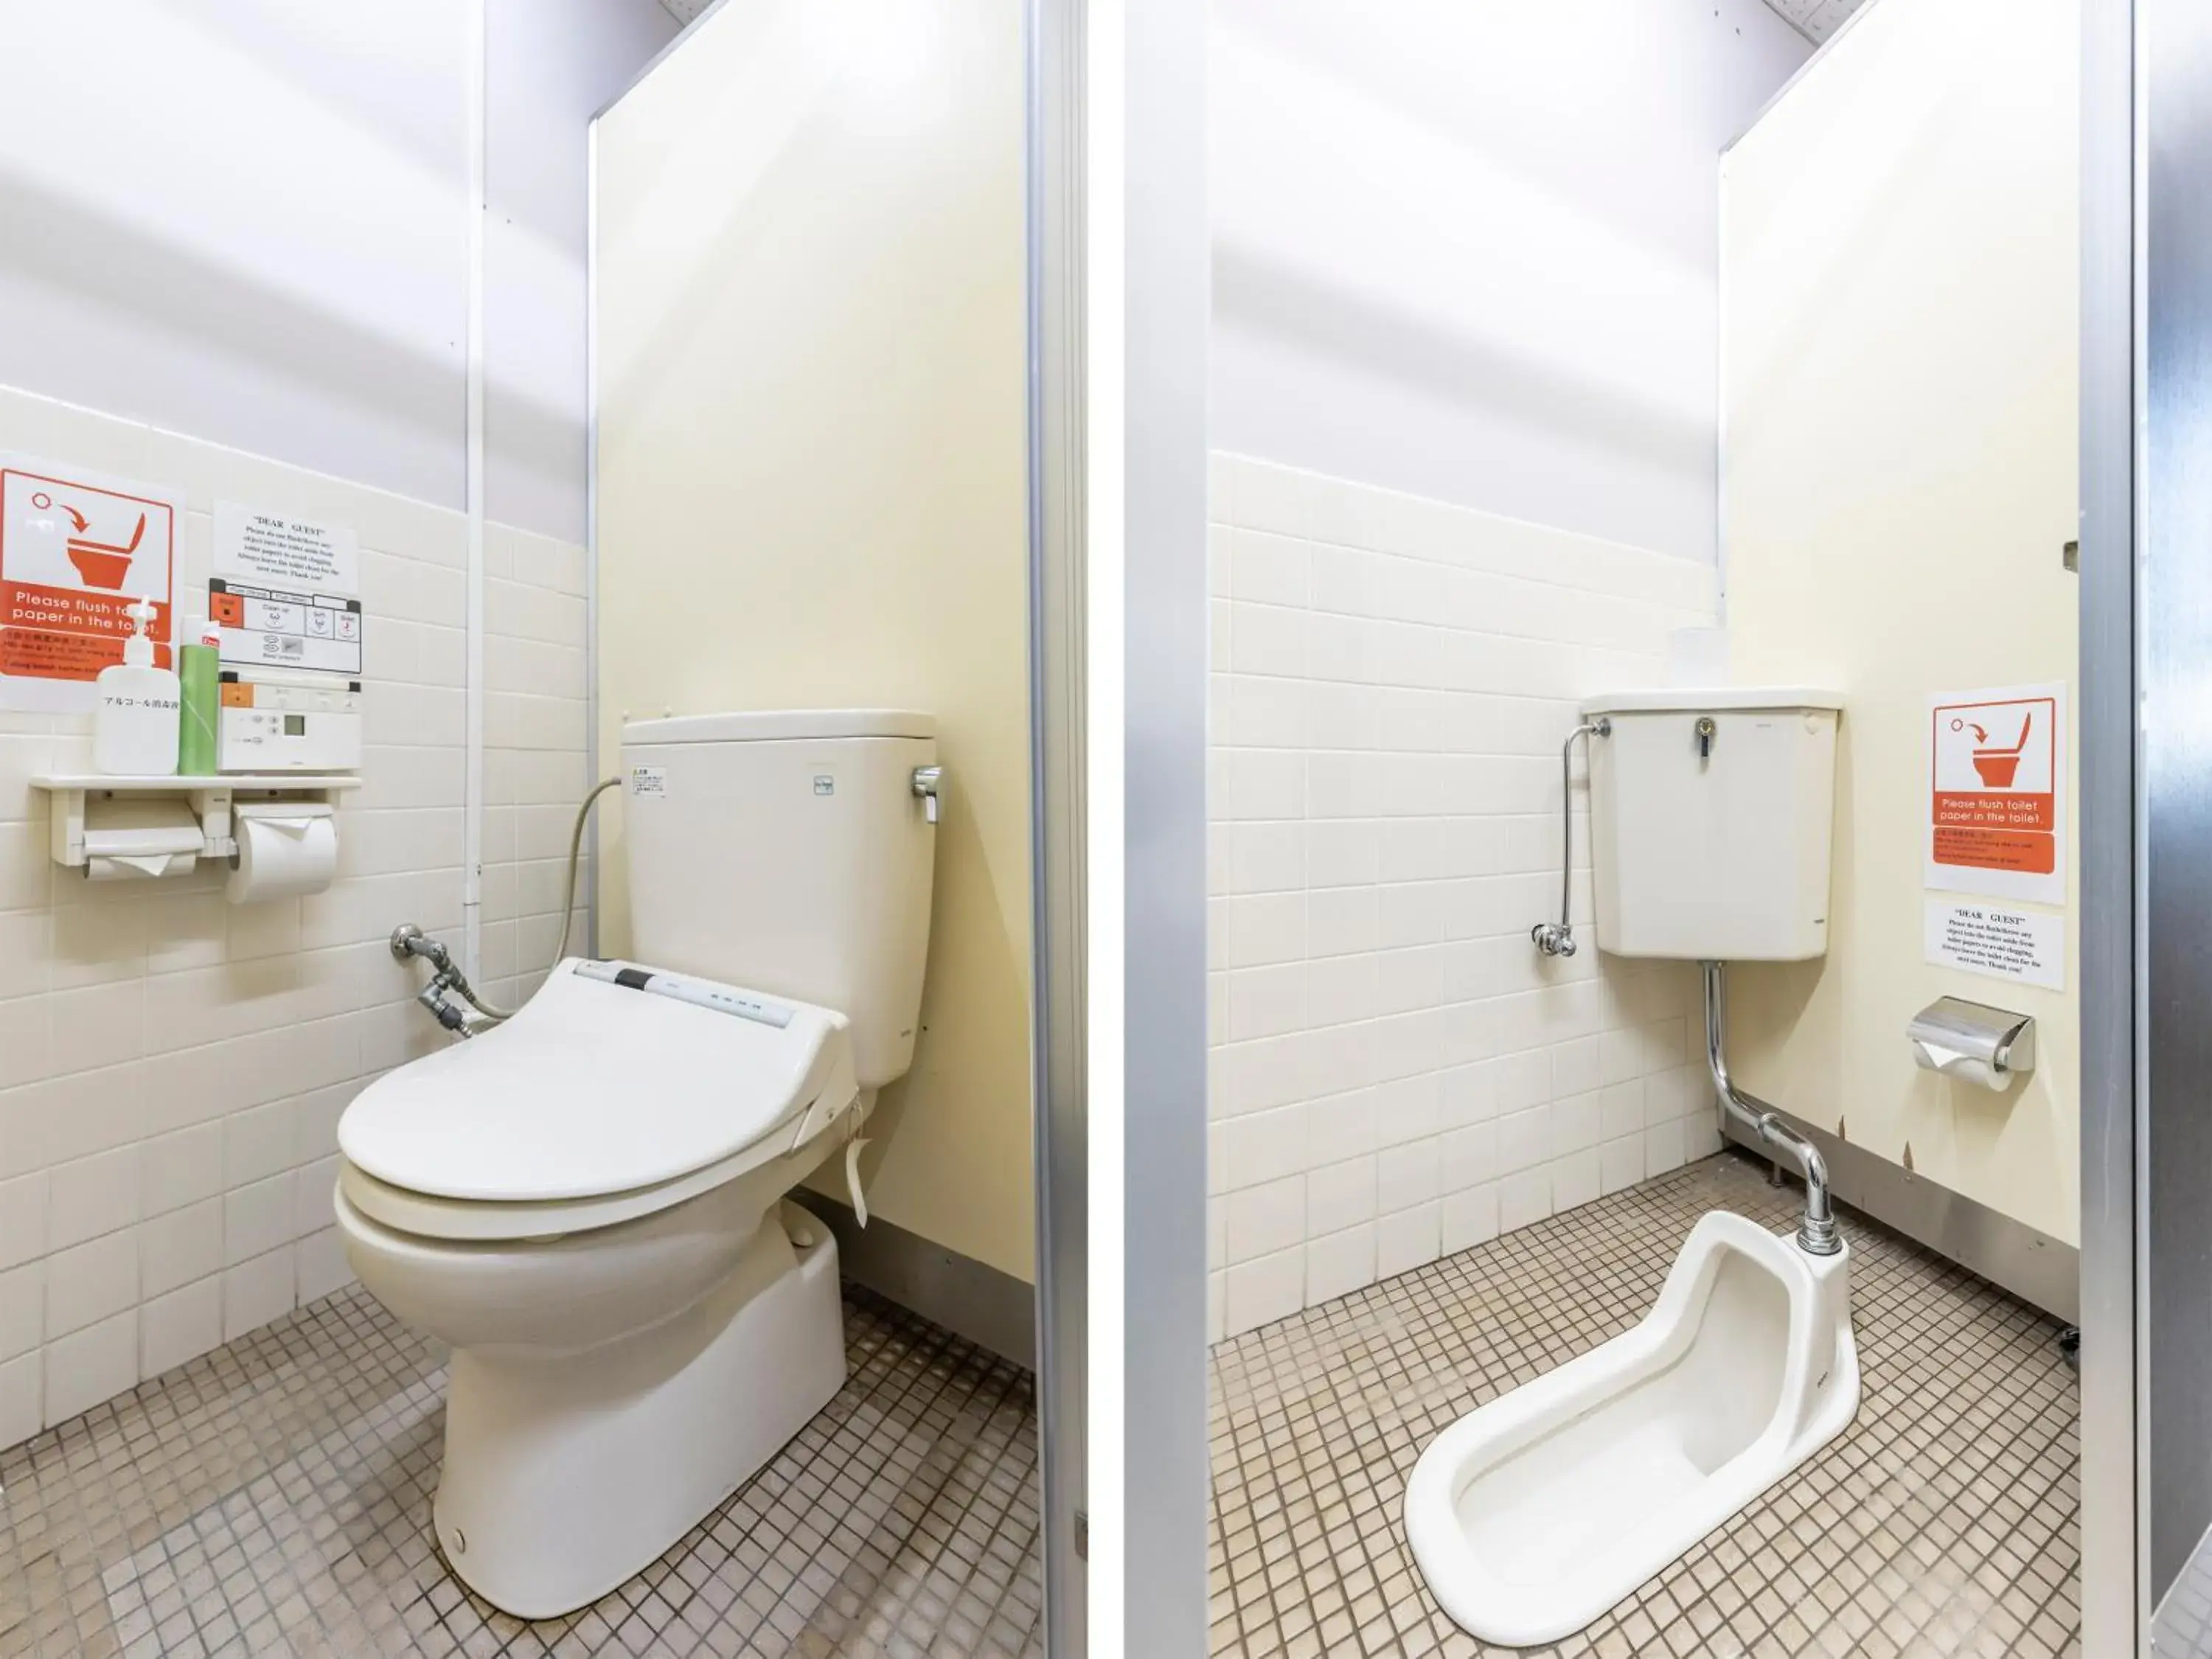 Toilet, Bathroom in Omotenashi Hostel Miyajima